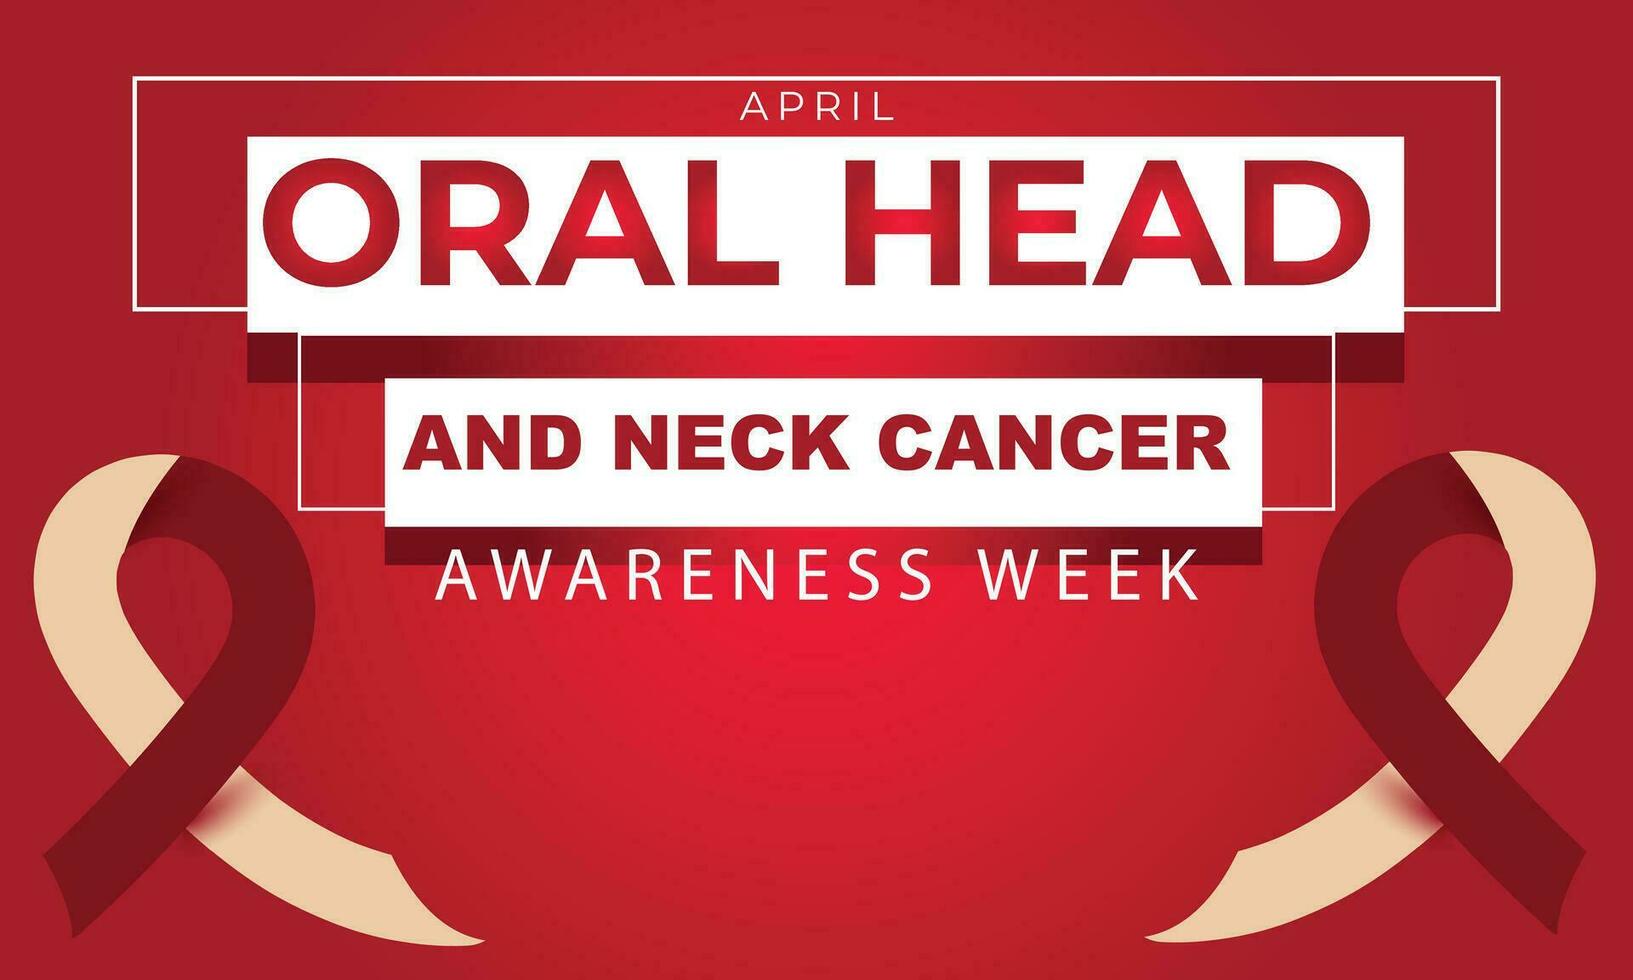 oral huvud och nacke cancer medvetenhet vecka. bakgrund, baner, kort, affisch, mall. vektor illustration.